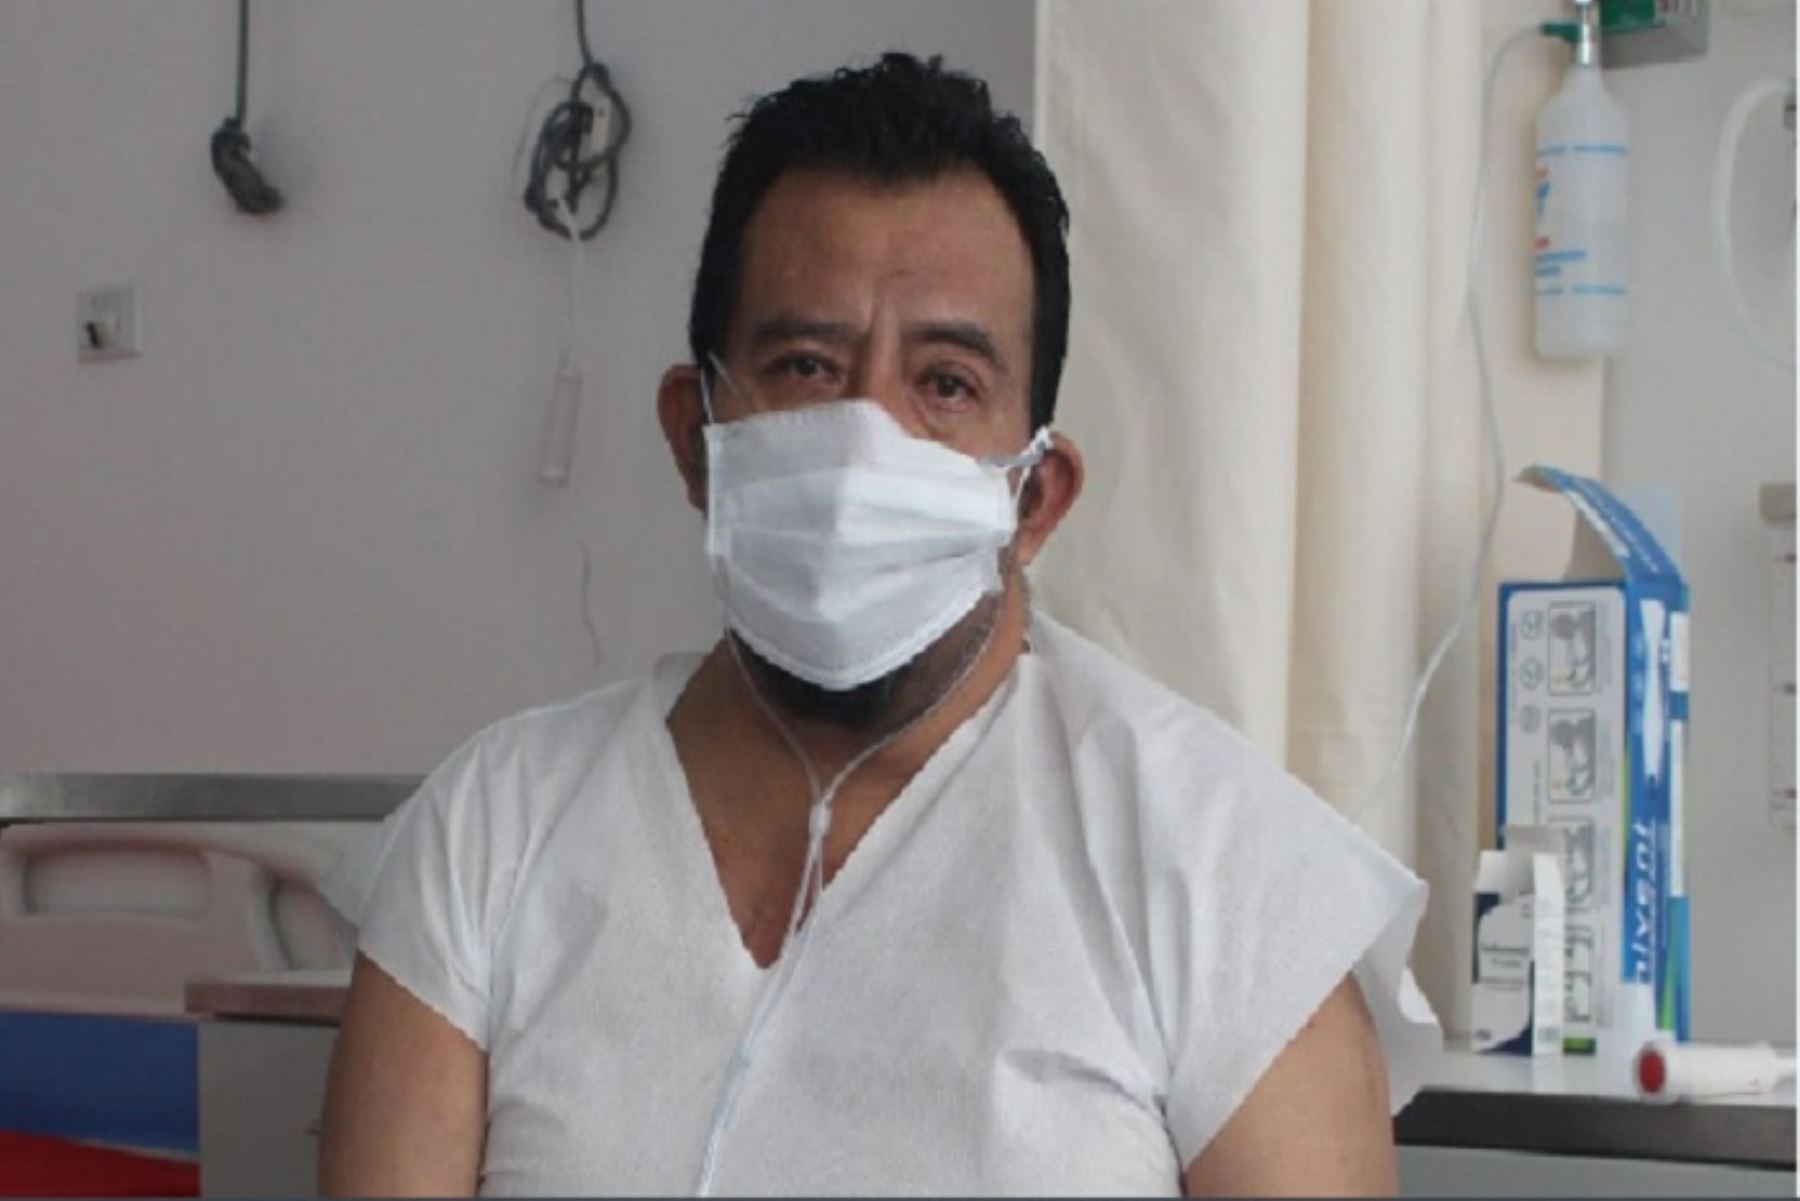 El médico Oscar Silva Yovera, que tiene 52 años y dos hijos, contrajo la enfermedad mientras curaba pacientes y salvaba vidas en el área de Emergencia del Hospital Santa Rosa de Piura.